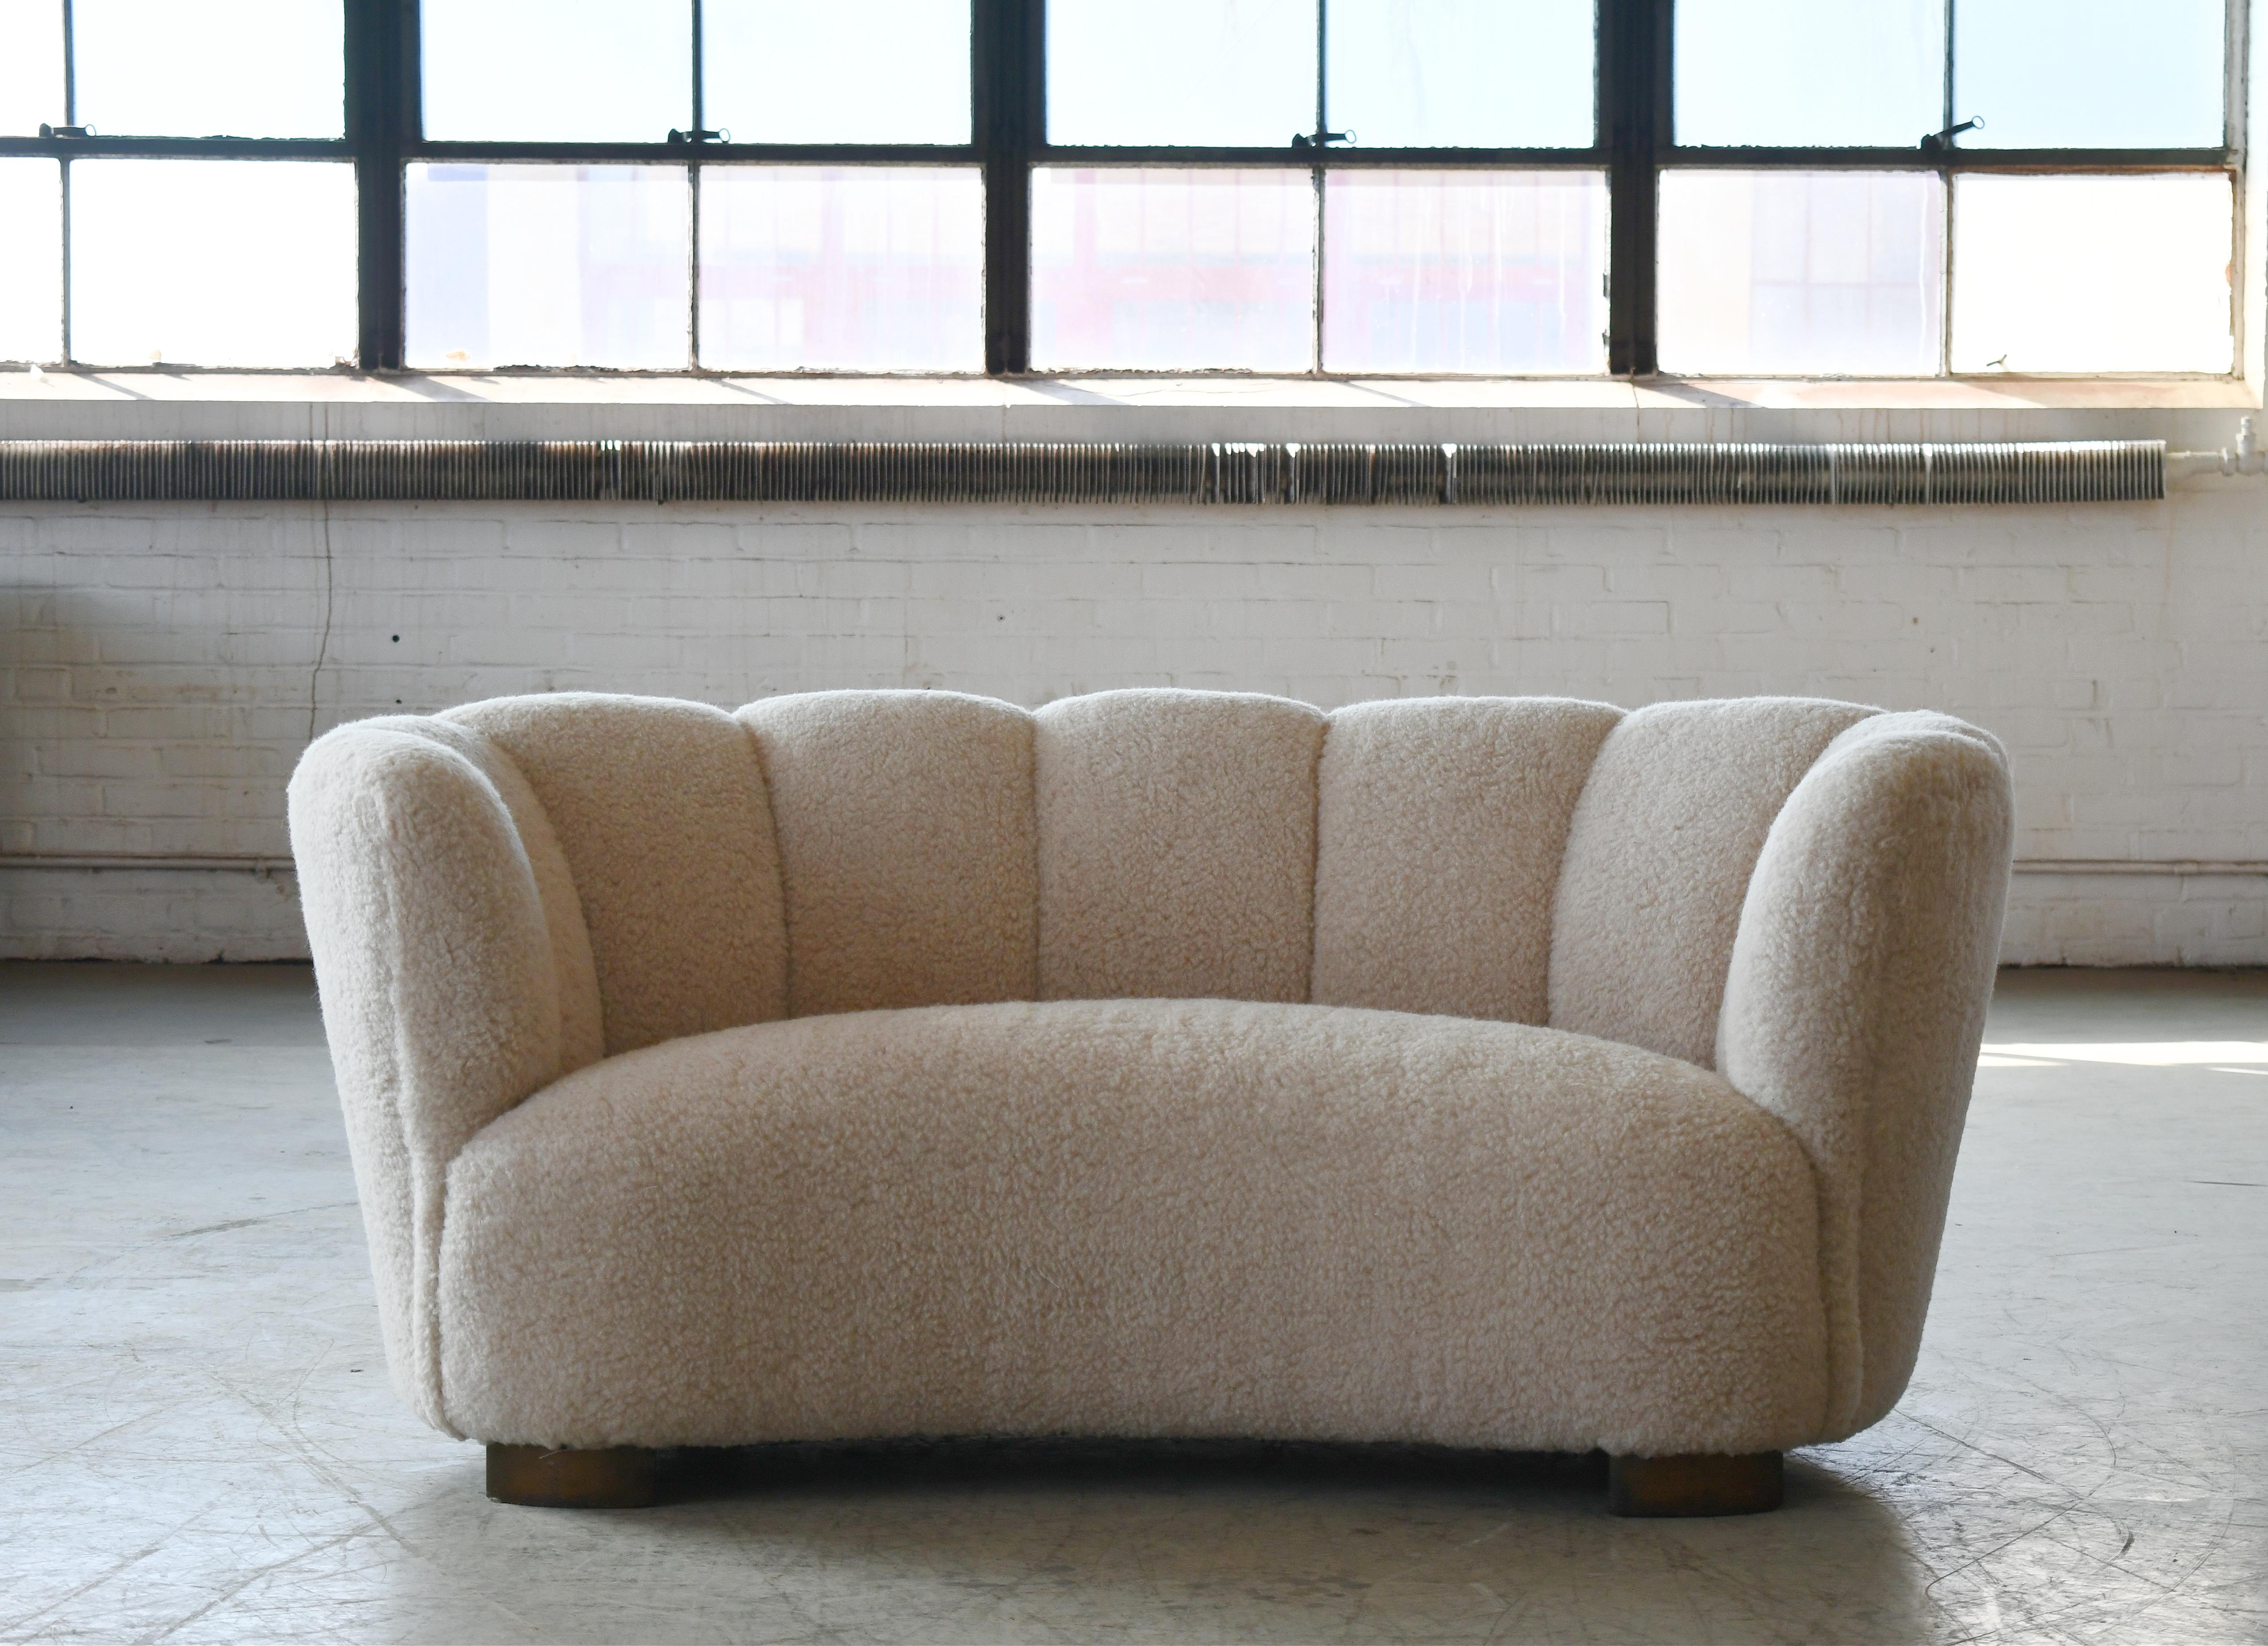 Bananenförmiges, geschwungenes Zweisitzer-Sofa oder -Liegesofa im Stil von Viggo Boesen, hergestellt in Dänemark in den 1940er Jahren. Dieses Sofa setzt in jedem Raum einen starken Akzent. Schöne runde Linien und ikonische Blockfüße, die man